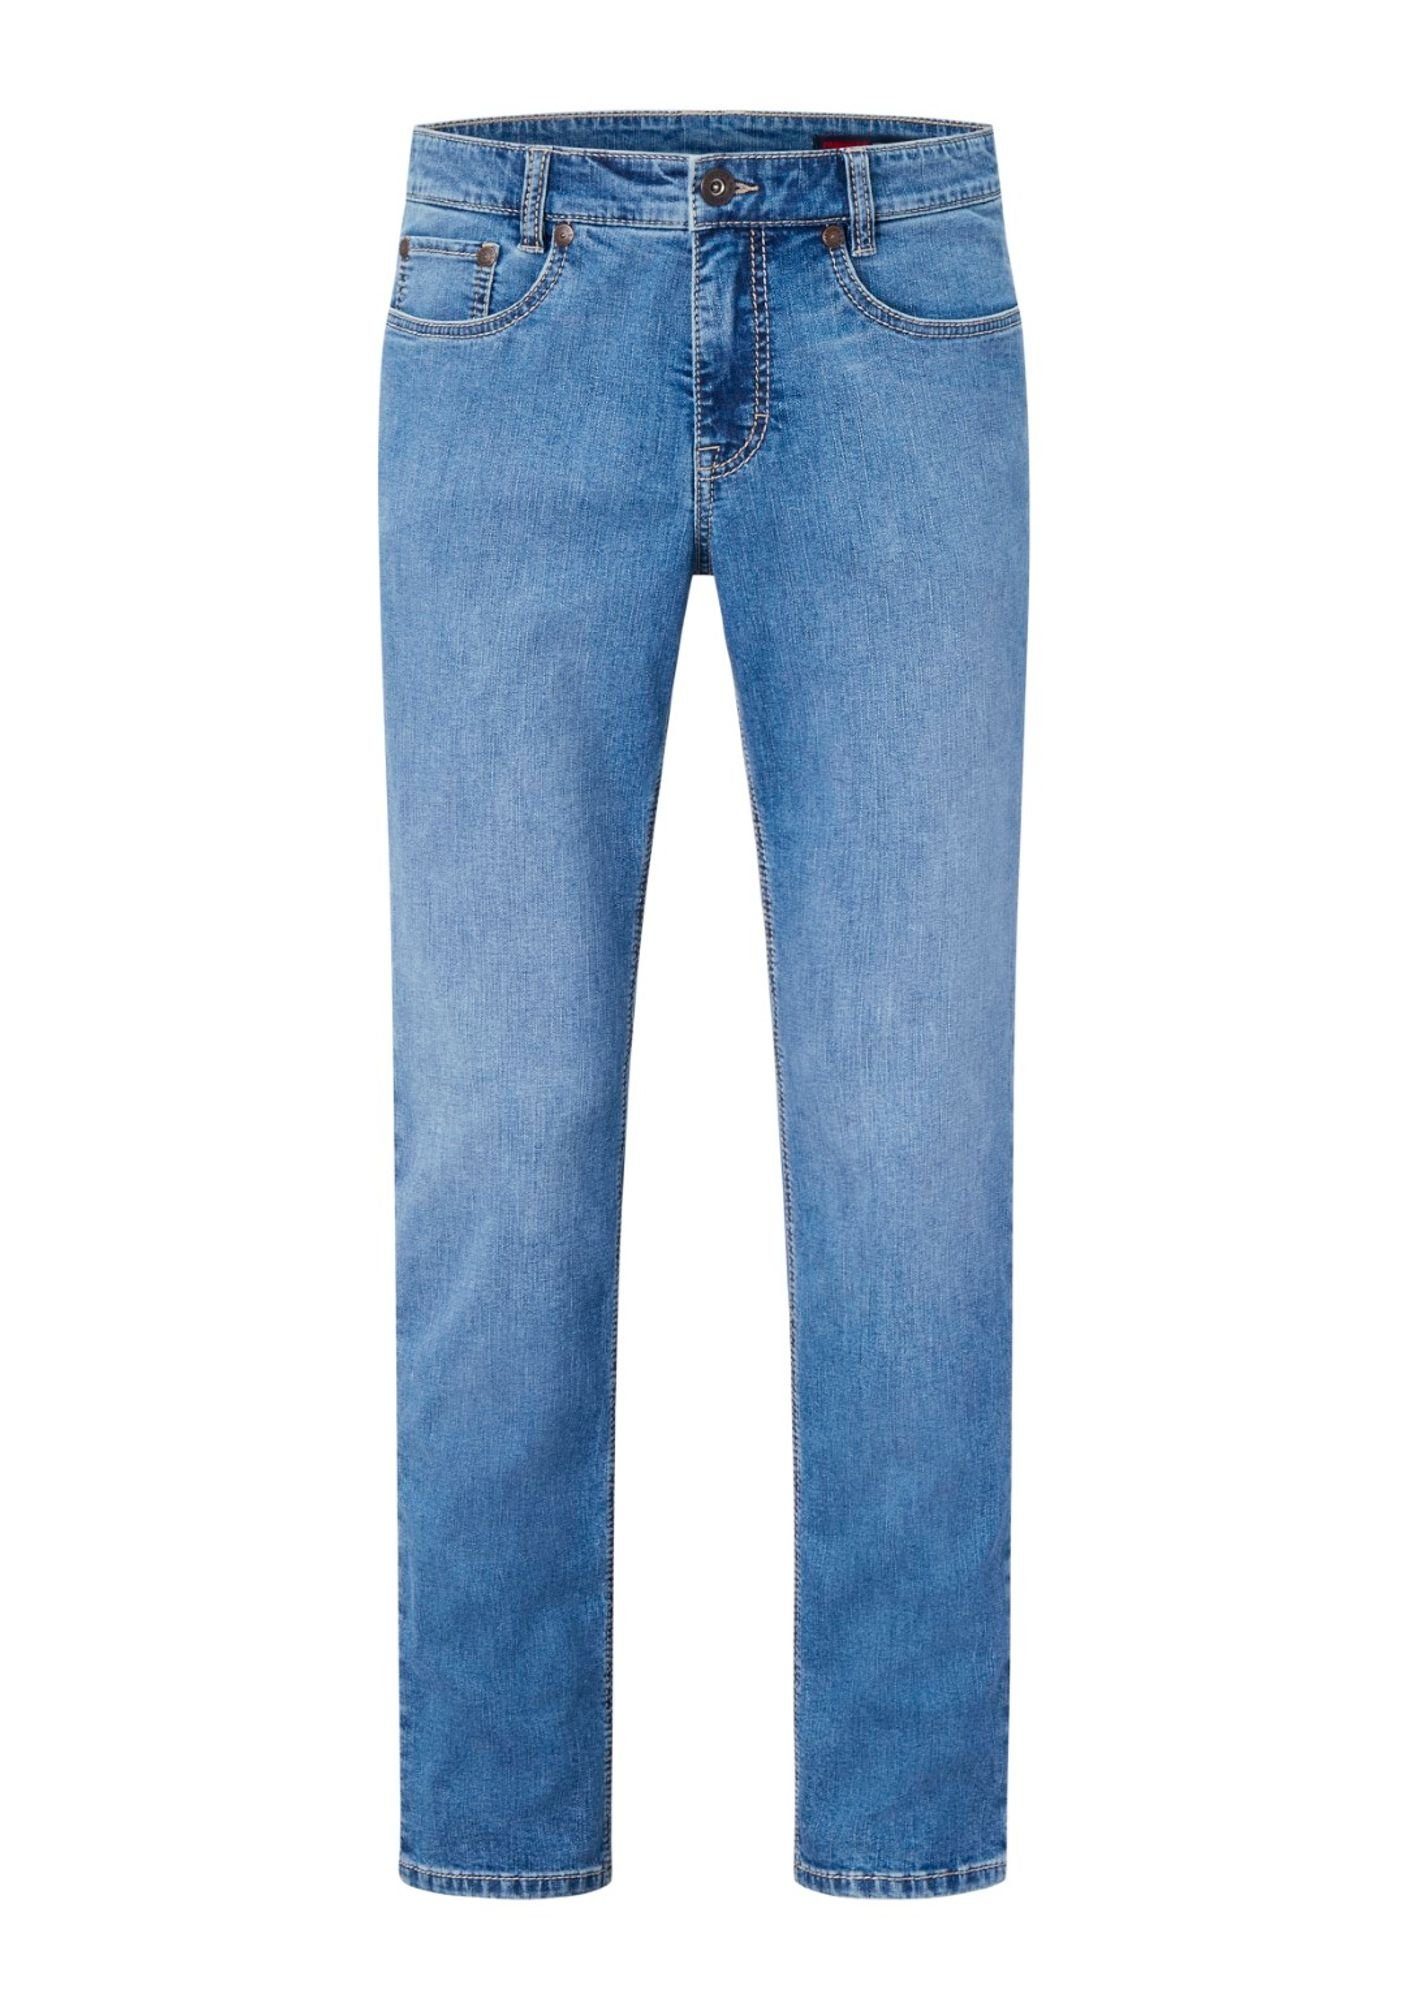 Paddock's 5-Pocket-Jeans 80227 6734 000 light blue use (4479)